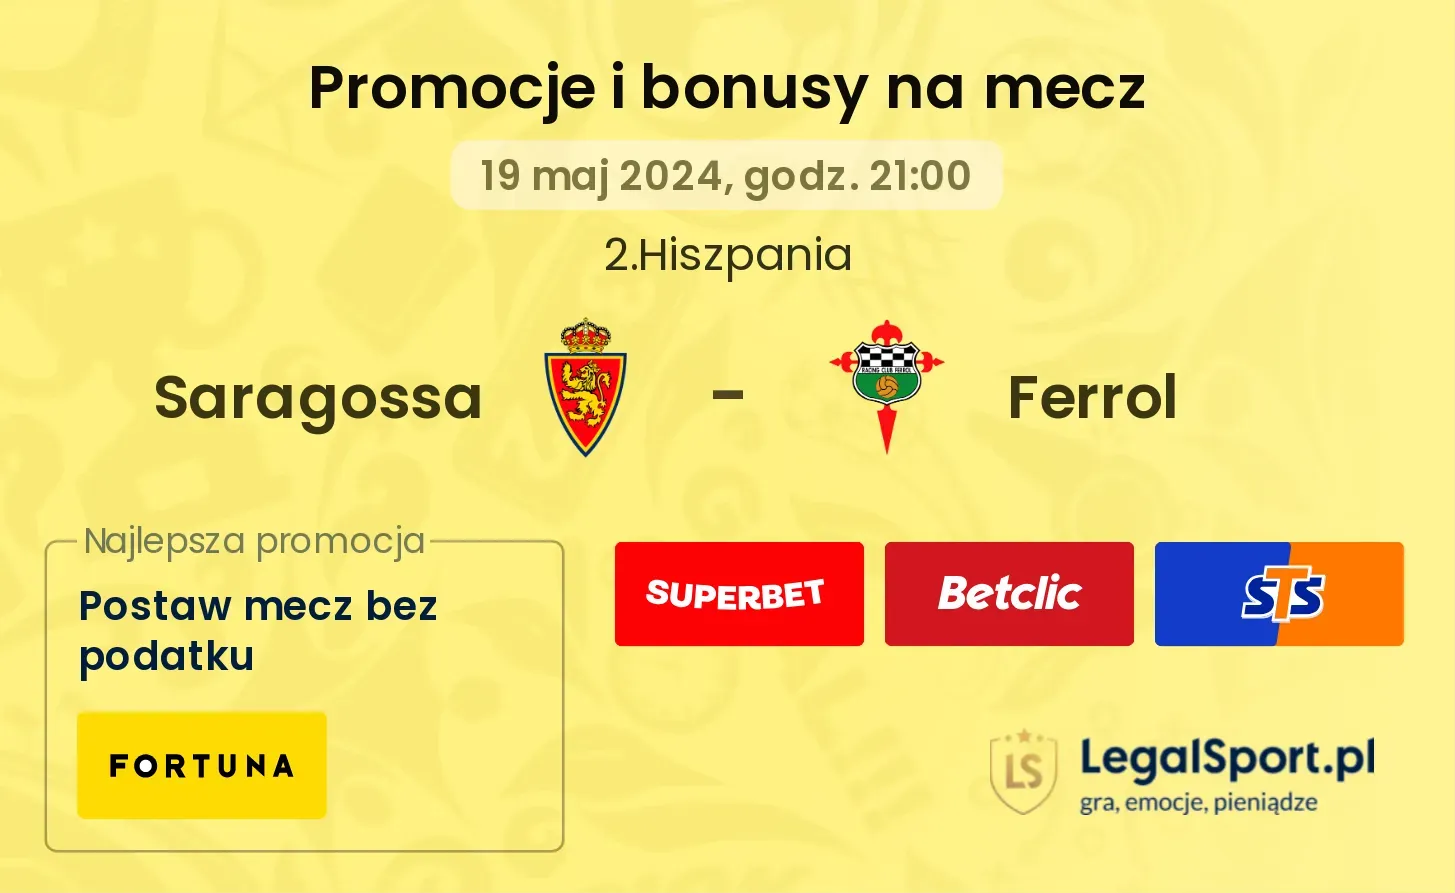 Saragossa - Ferrol bonusy i promocje (19.05, 21:00)